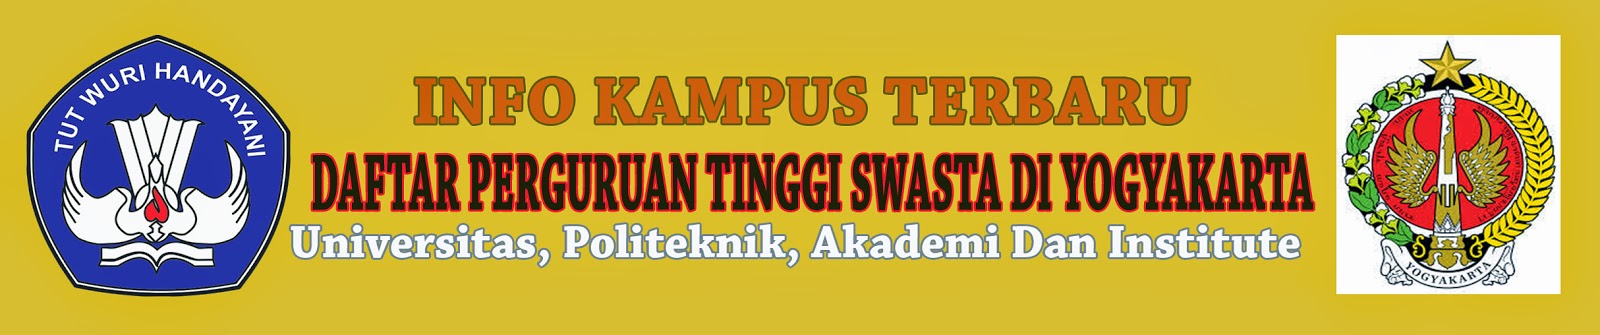 Daftar Perguruan Tinggi Swasta Di Yogyakarta | Info Kampus Terbaru | Informasi Seputar Dunia Kampus